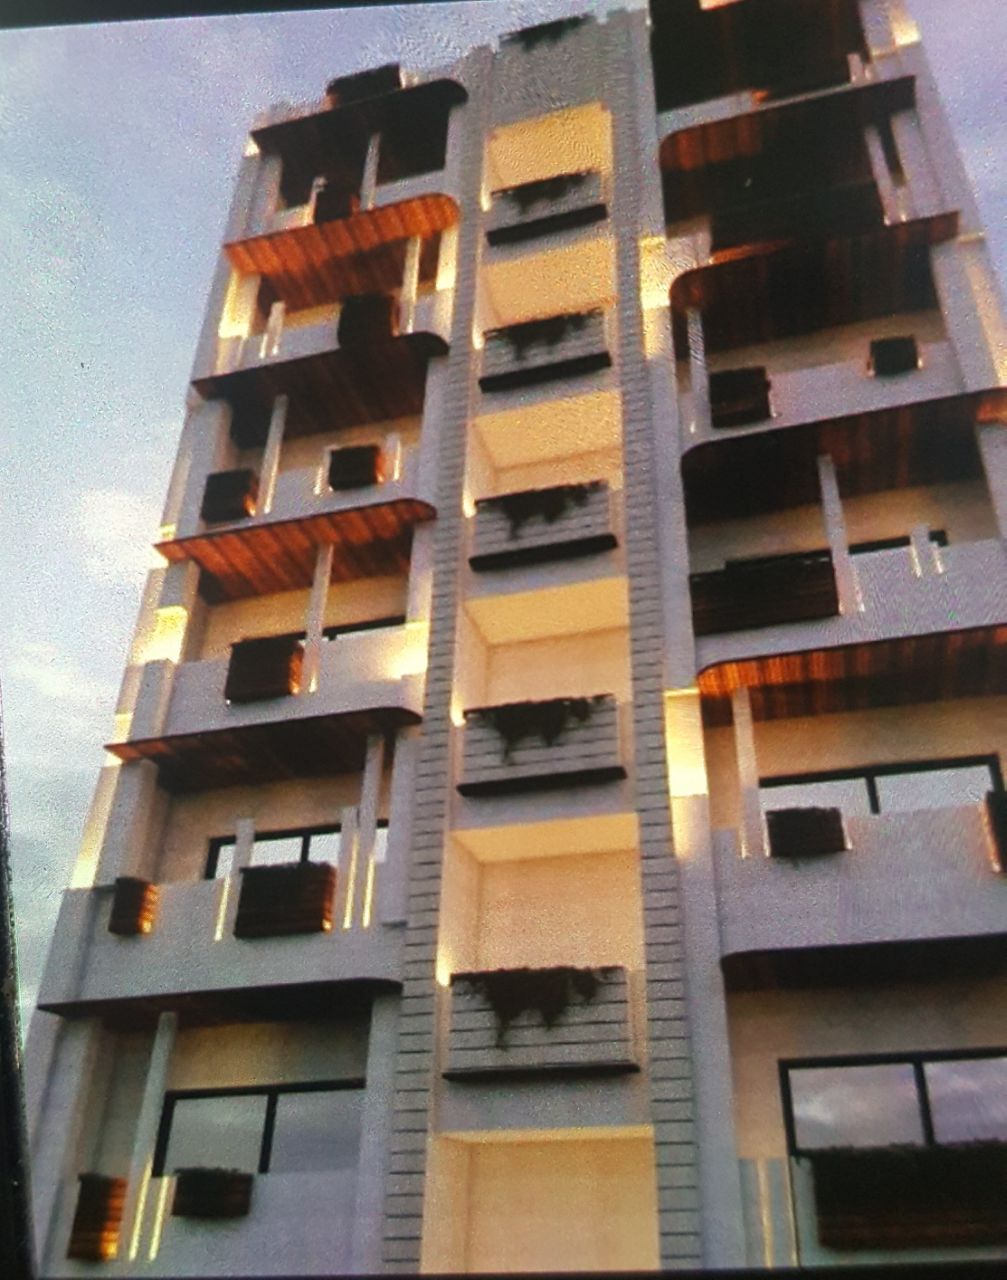 یوسف آباد بین شهریار و بیستون  آپارتمان اجاره ای 120 متر 3 سال ساخت